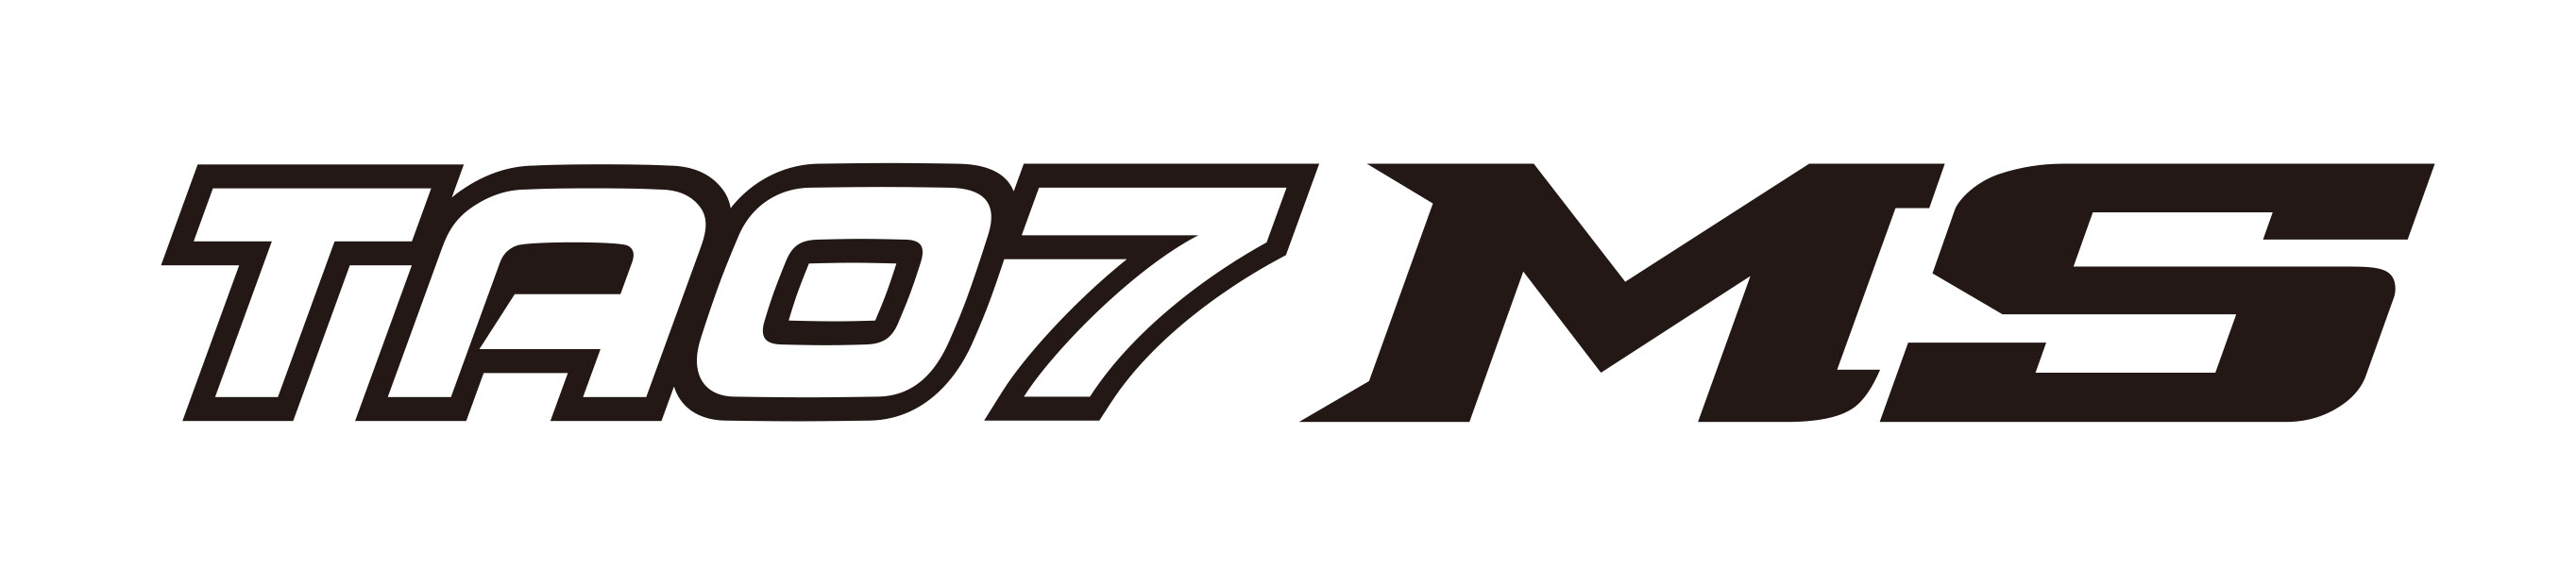 TA07MS_logo.jpg